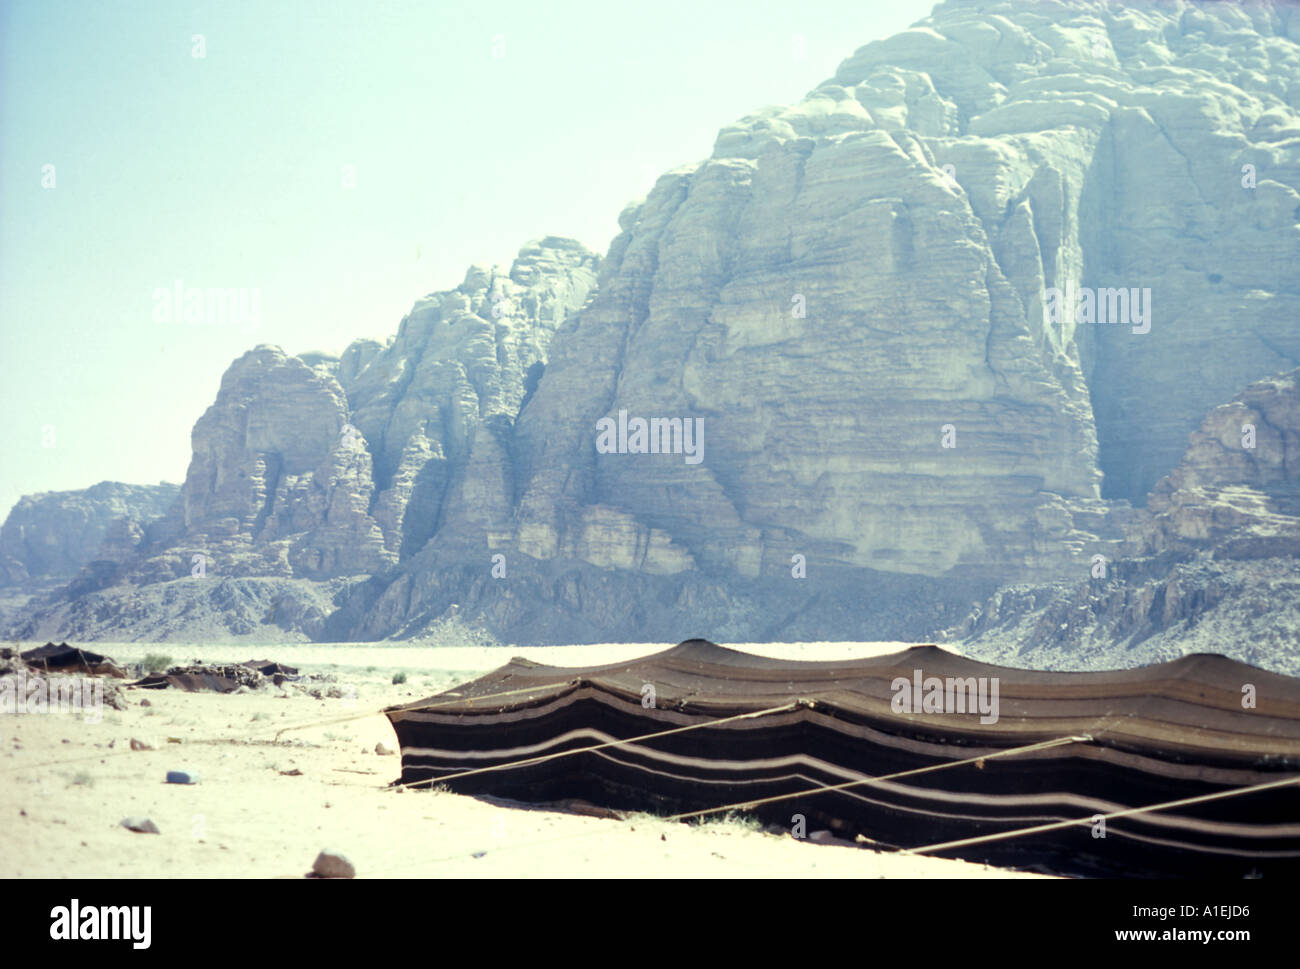 JORDAN Bedouin tents pitched in Wadi Rum Stock Photo